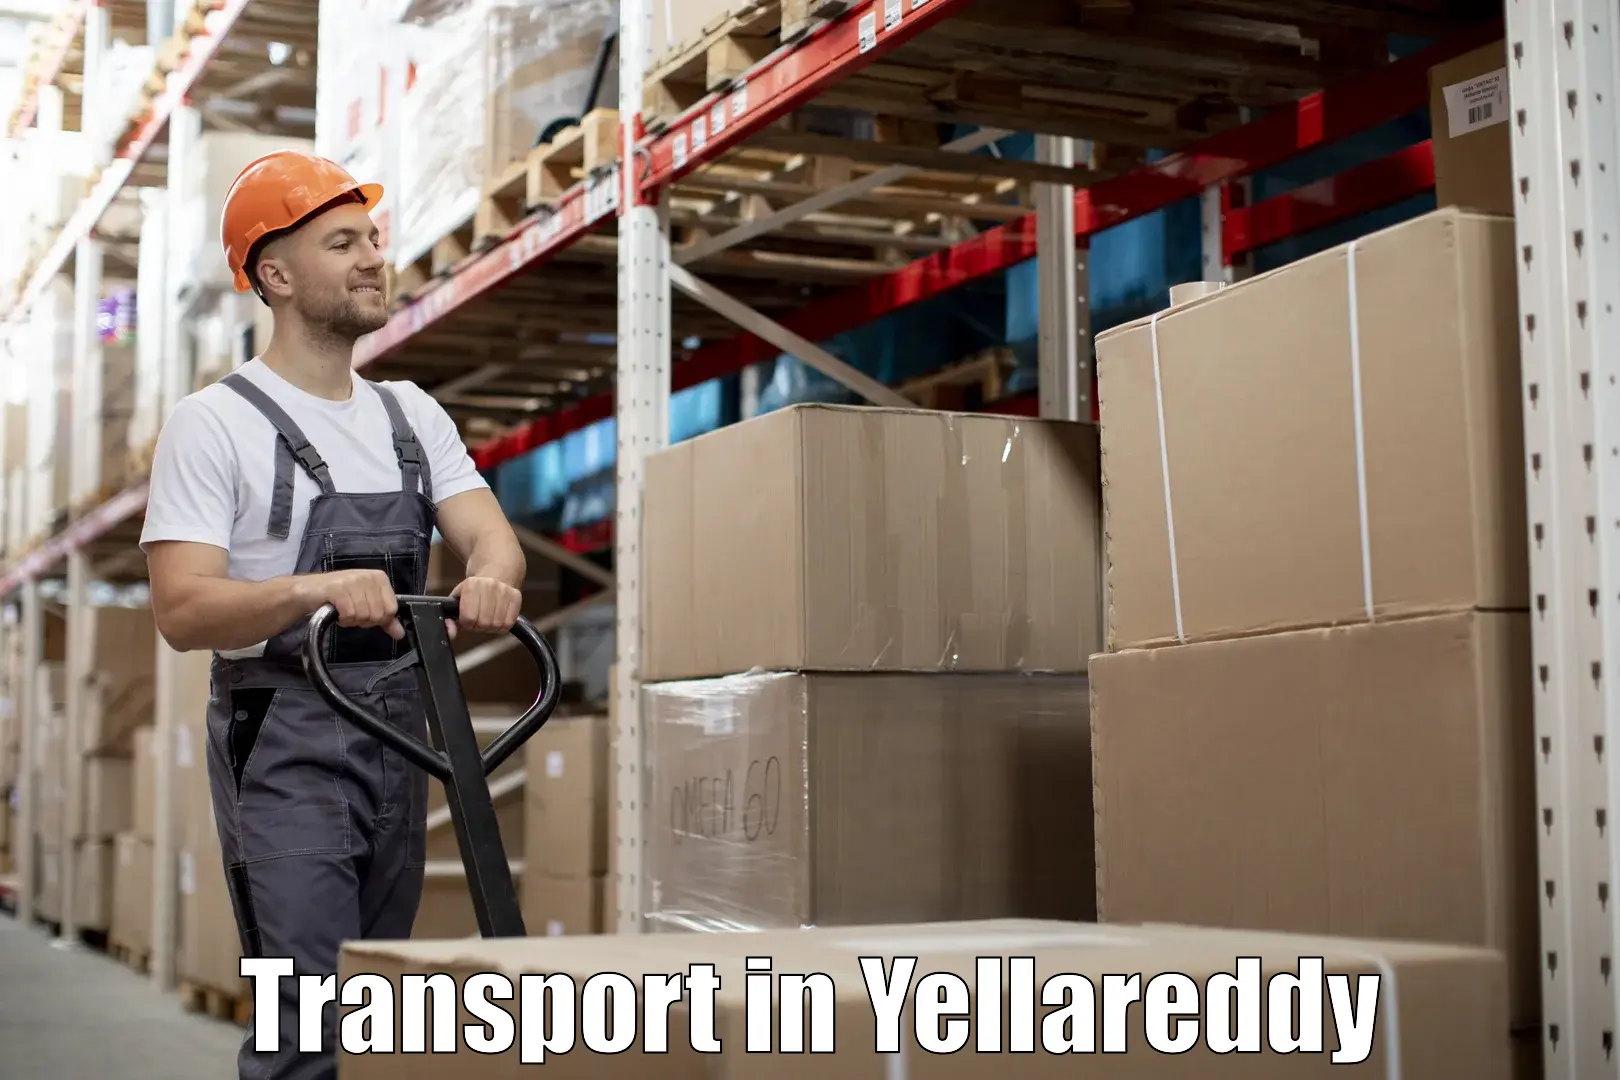 Nearest transport service in Yellareddy